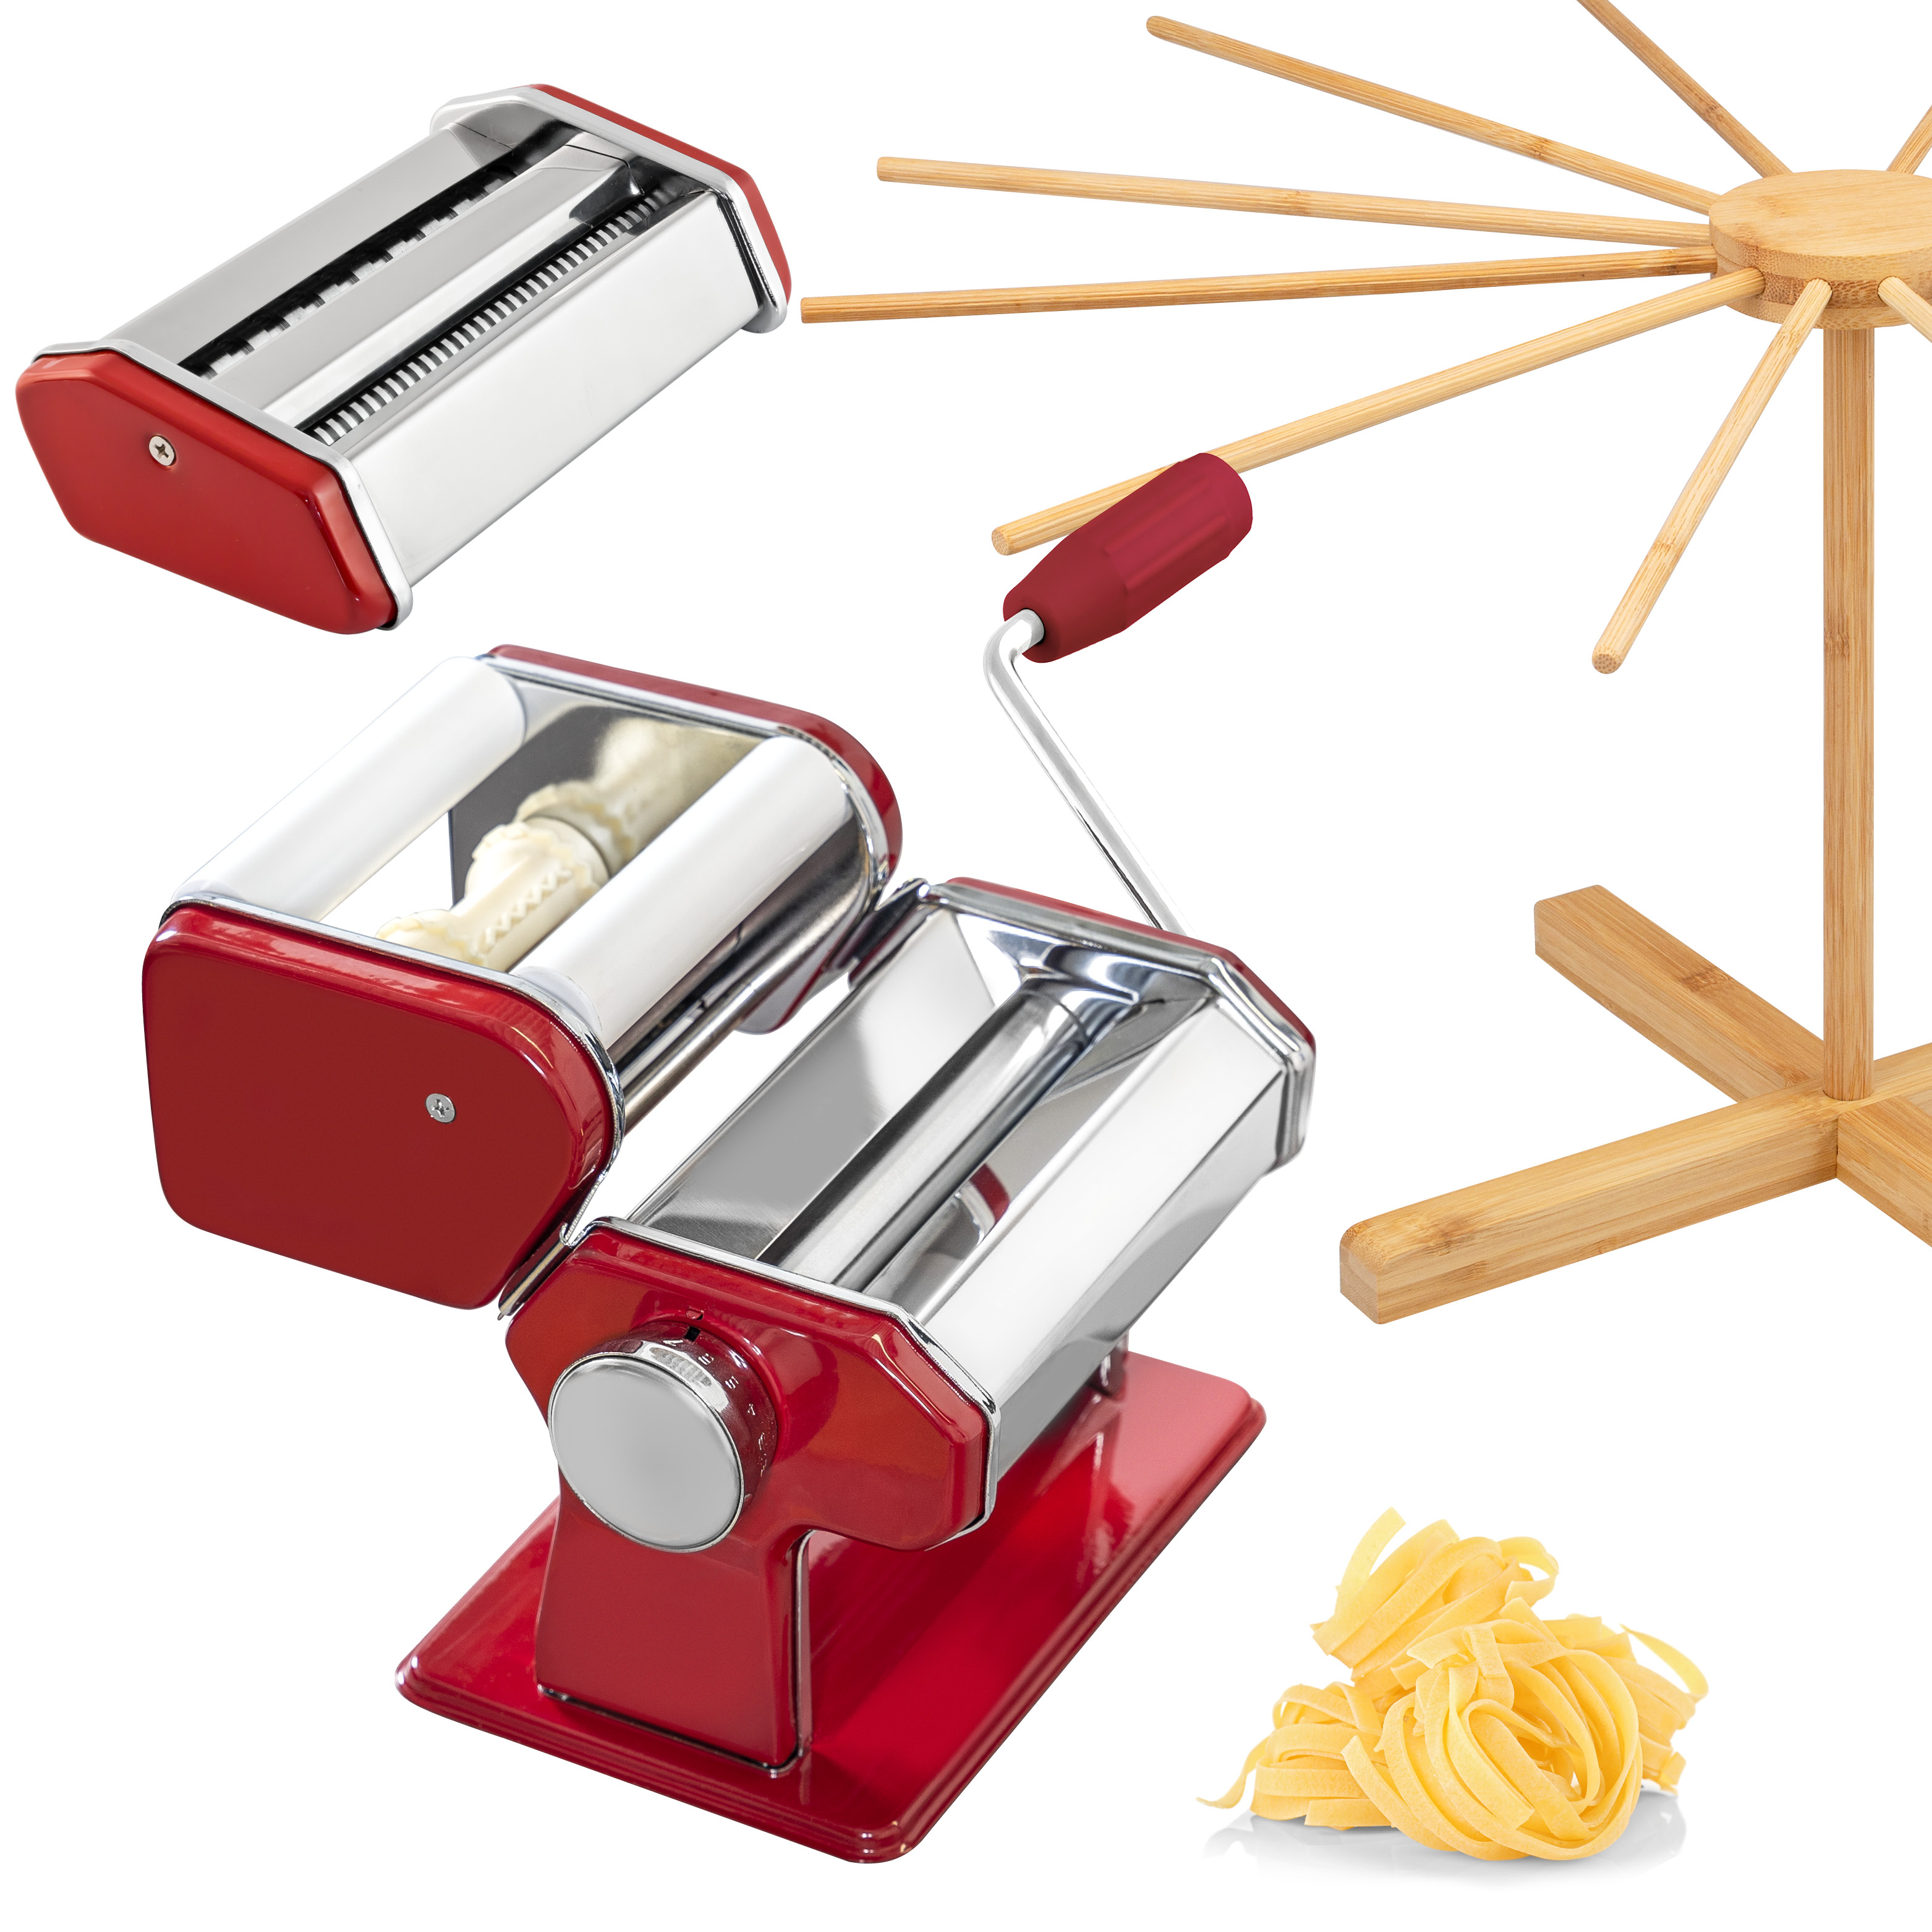 Nudelmaschine für Spaghetti, Pasta, Ravioli und Lasagne inkl. Nudeltrocker aus Bambus als Set, rot